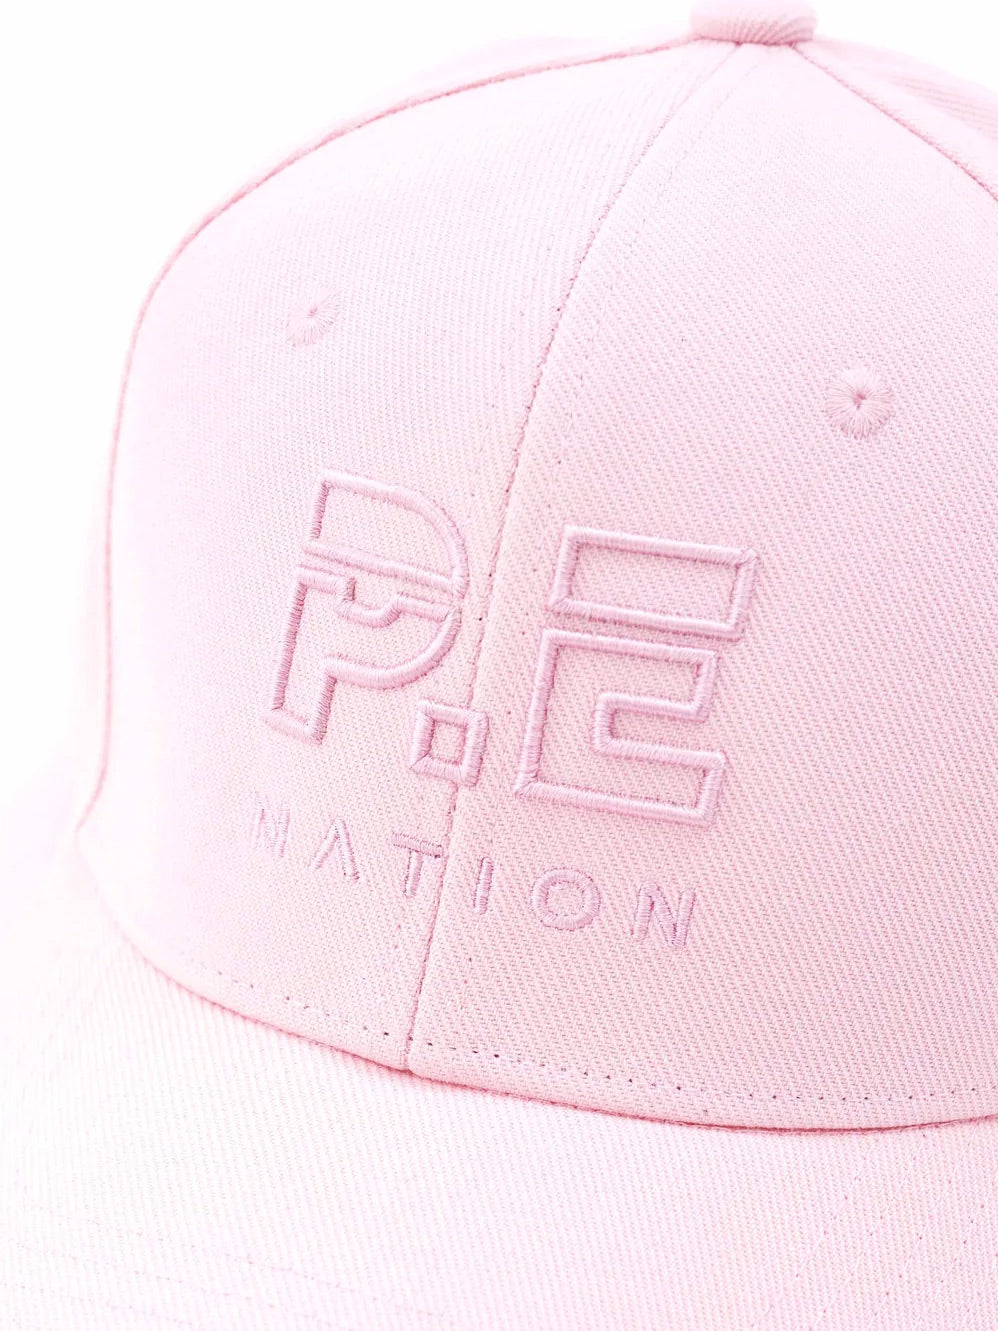 P.E NATION DEFINITION CAP